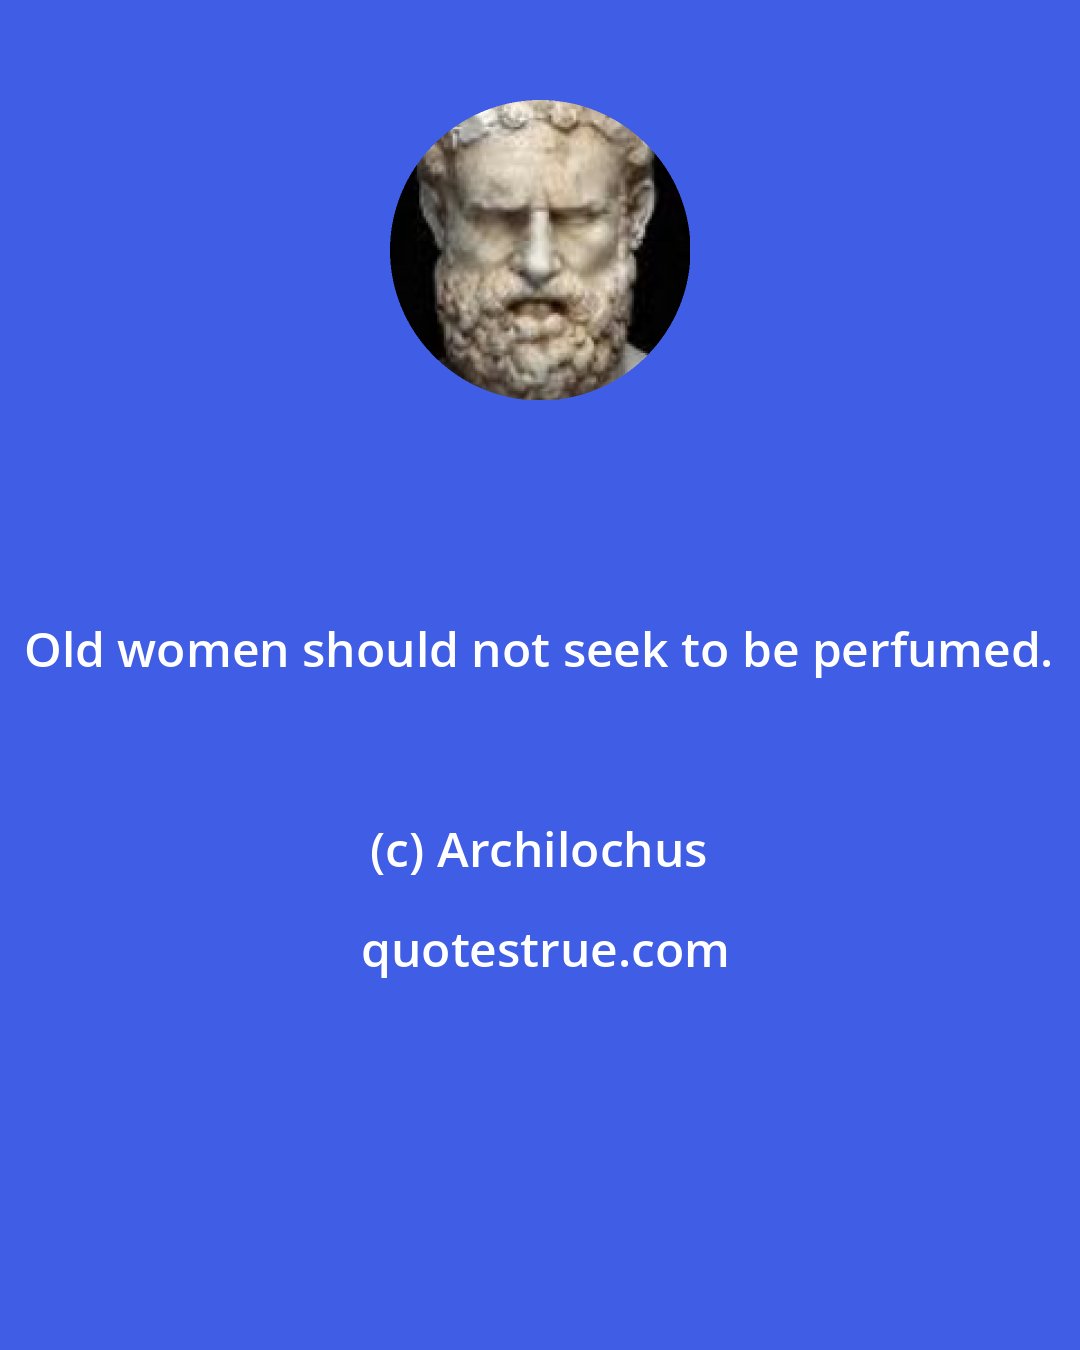 Archilochus: Old women should not seek to be perfumed.